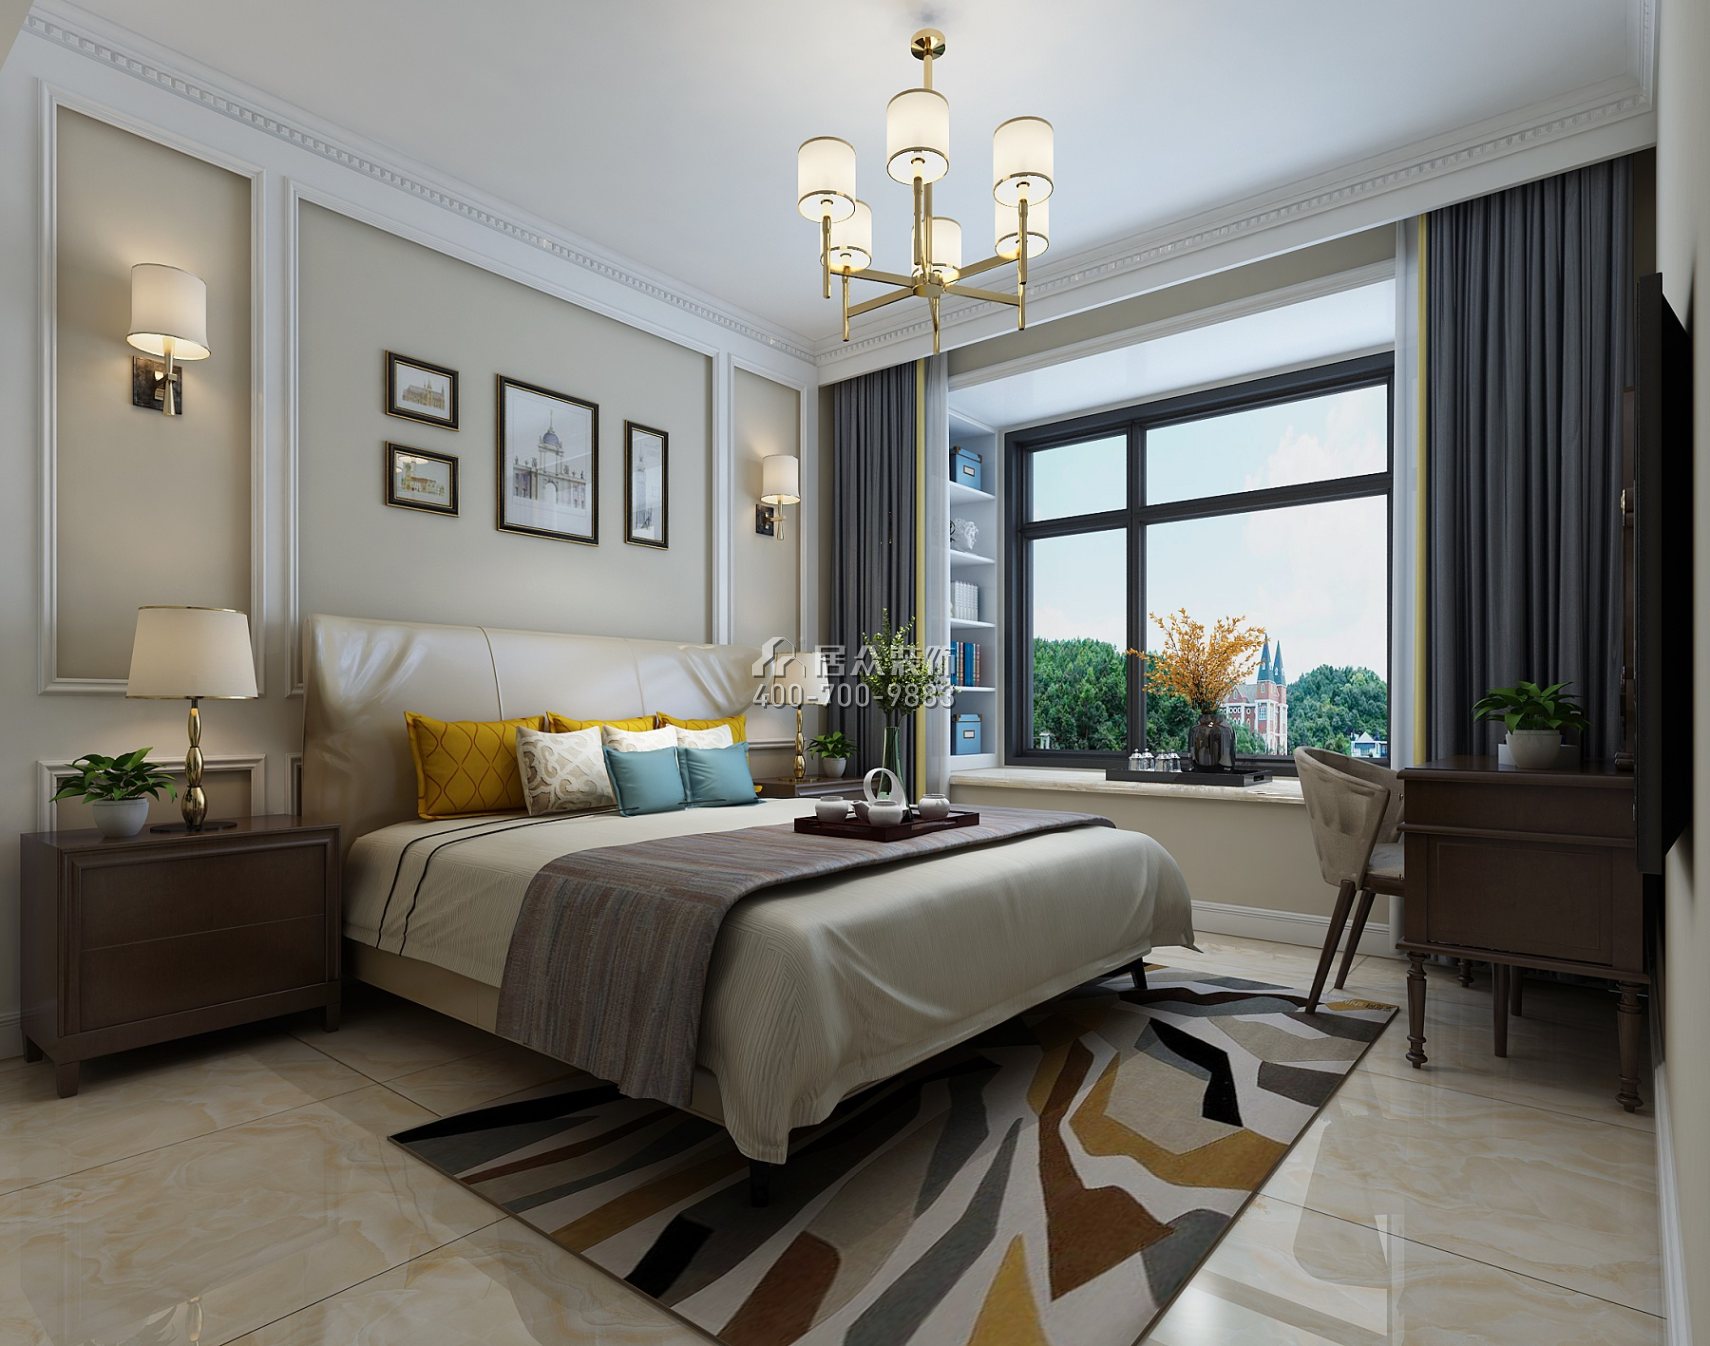 上东国际花园120平方米美式风格平层户型卧室装修效果图